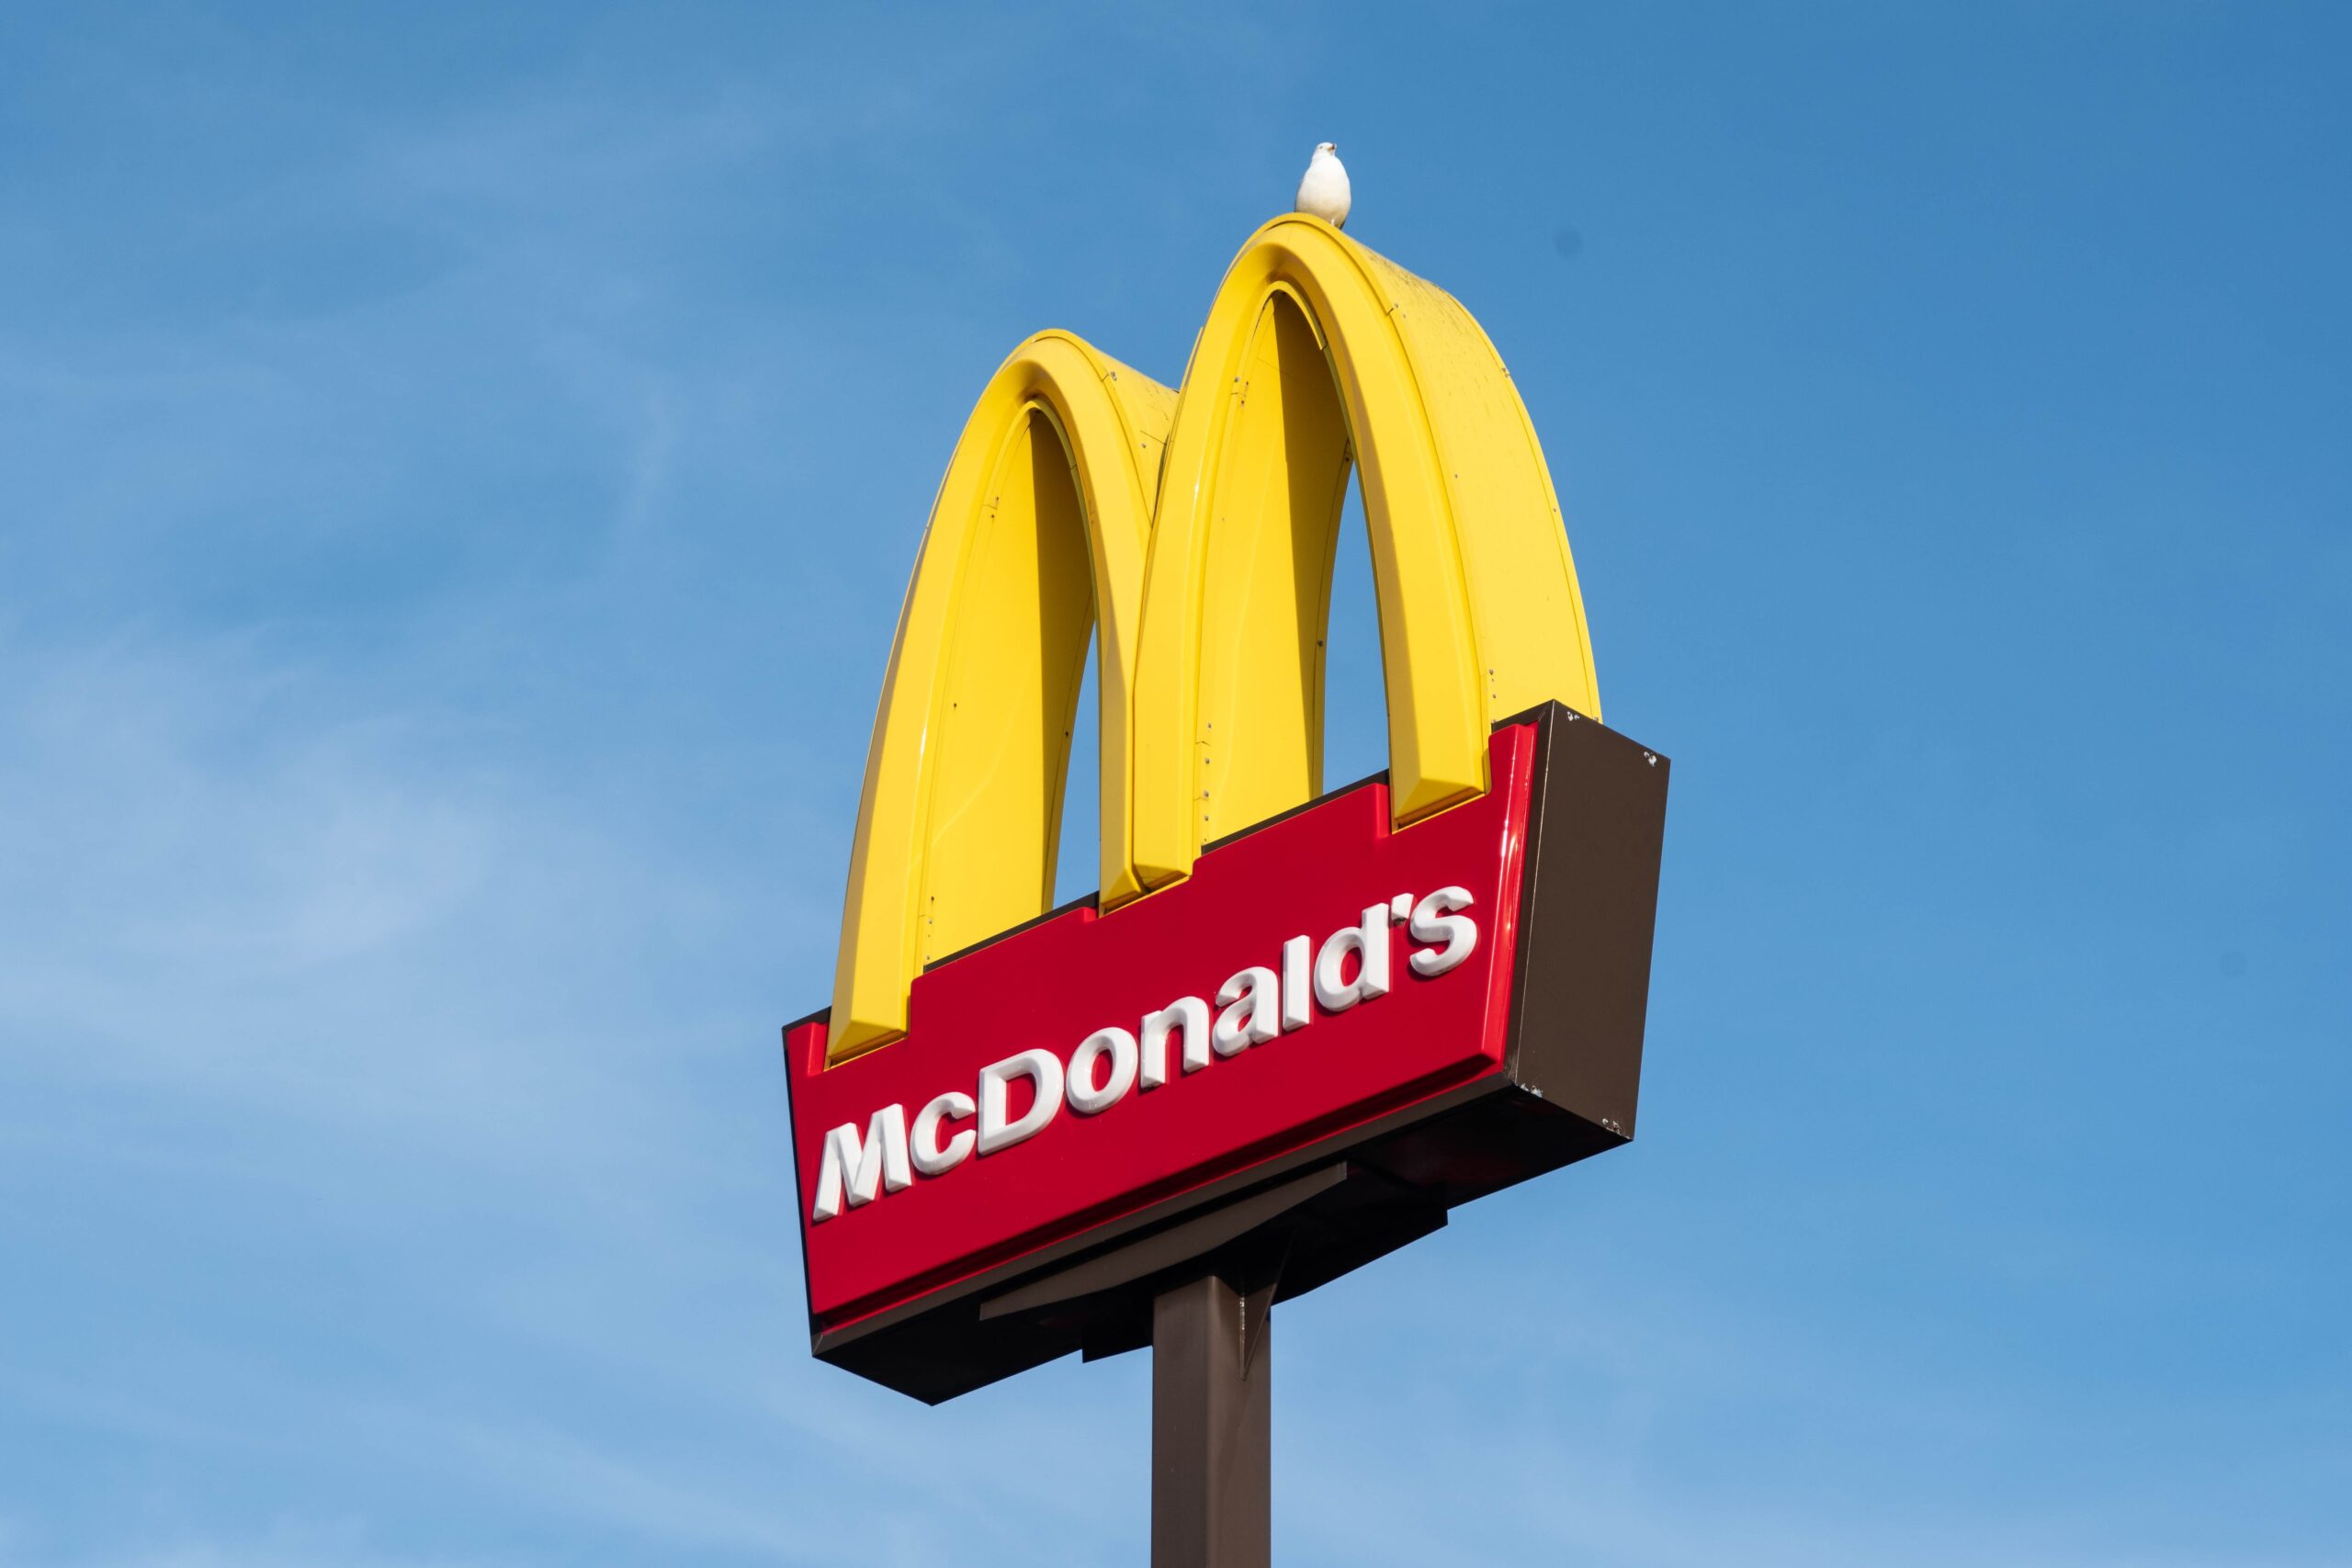 Pensando em ter uma franquia da McDonald’s? Confira agora todas as informações sobre adquirir uma loja da grande rede de fast food!